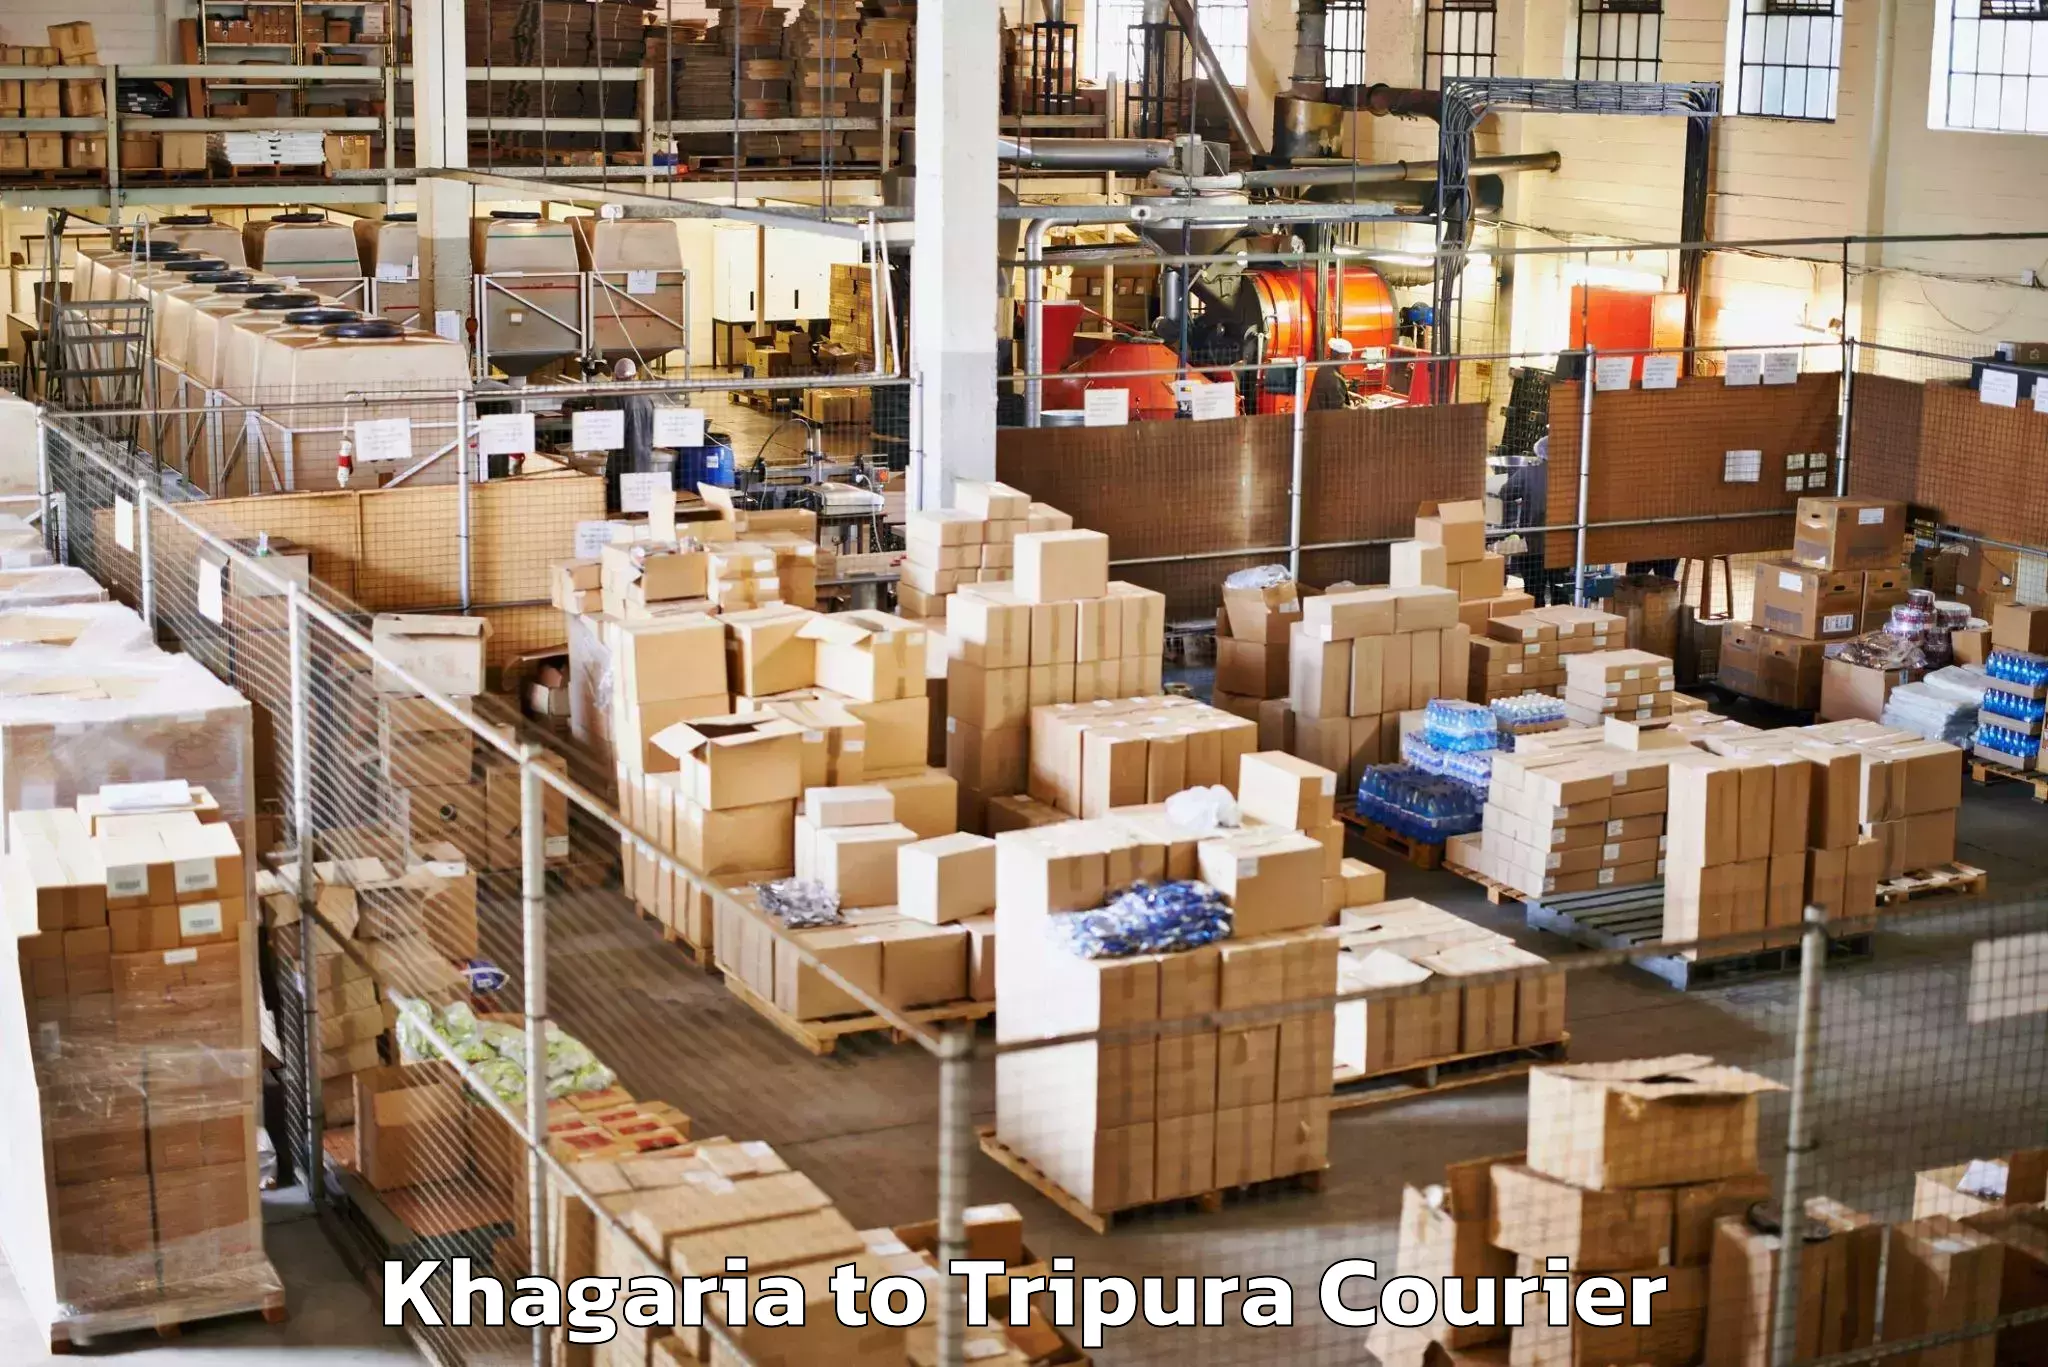 Baggage shipping experts Khagaria to Kailashahar